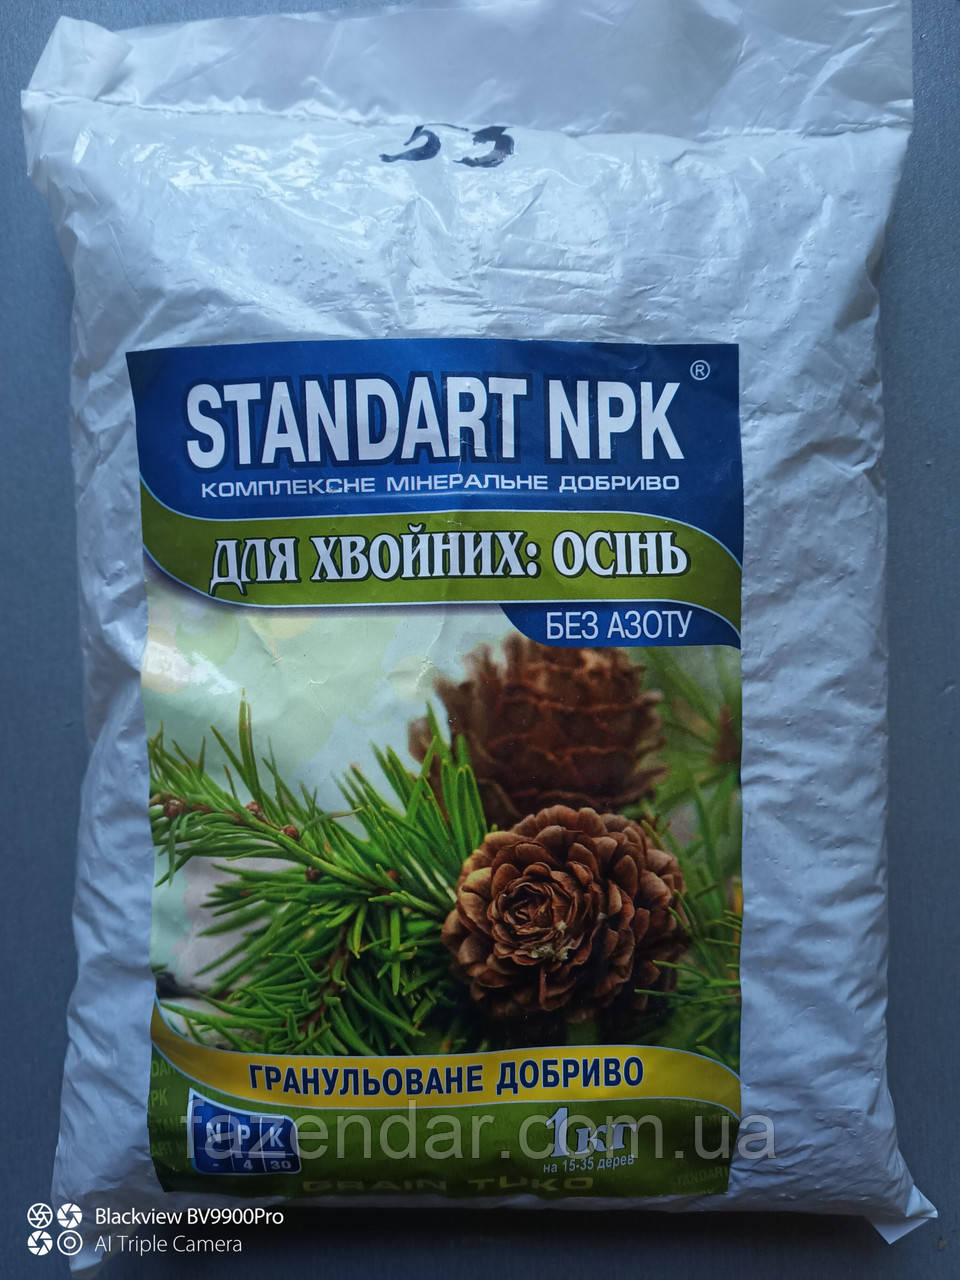 Комплексне мінеральне безазотне добриво Standart NPK для хвойних (осінь)